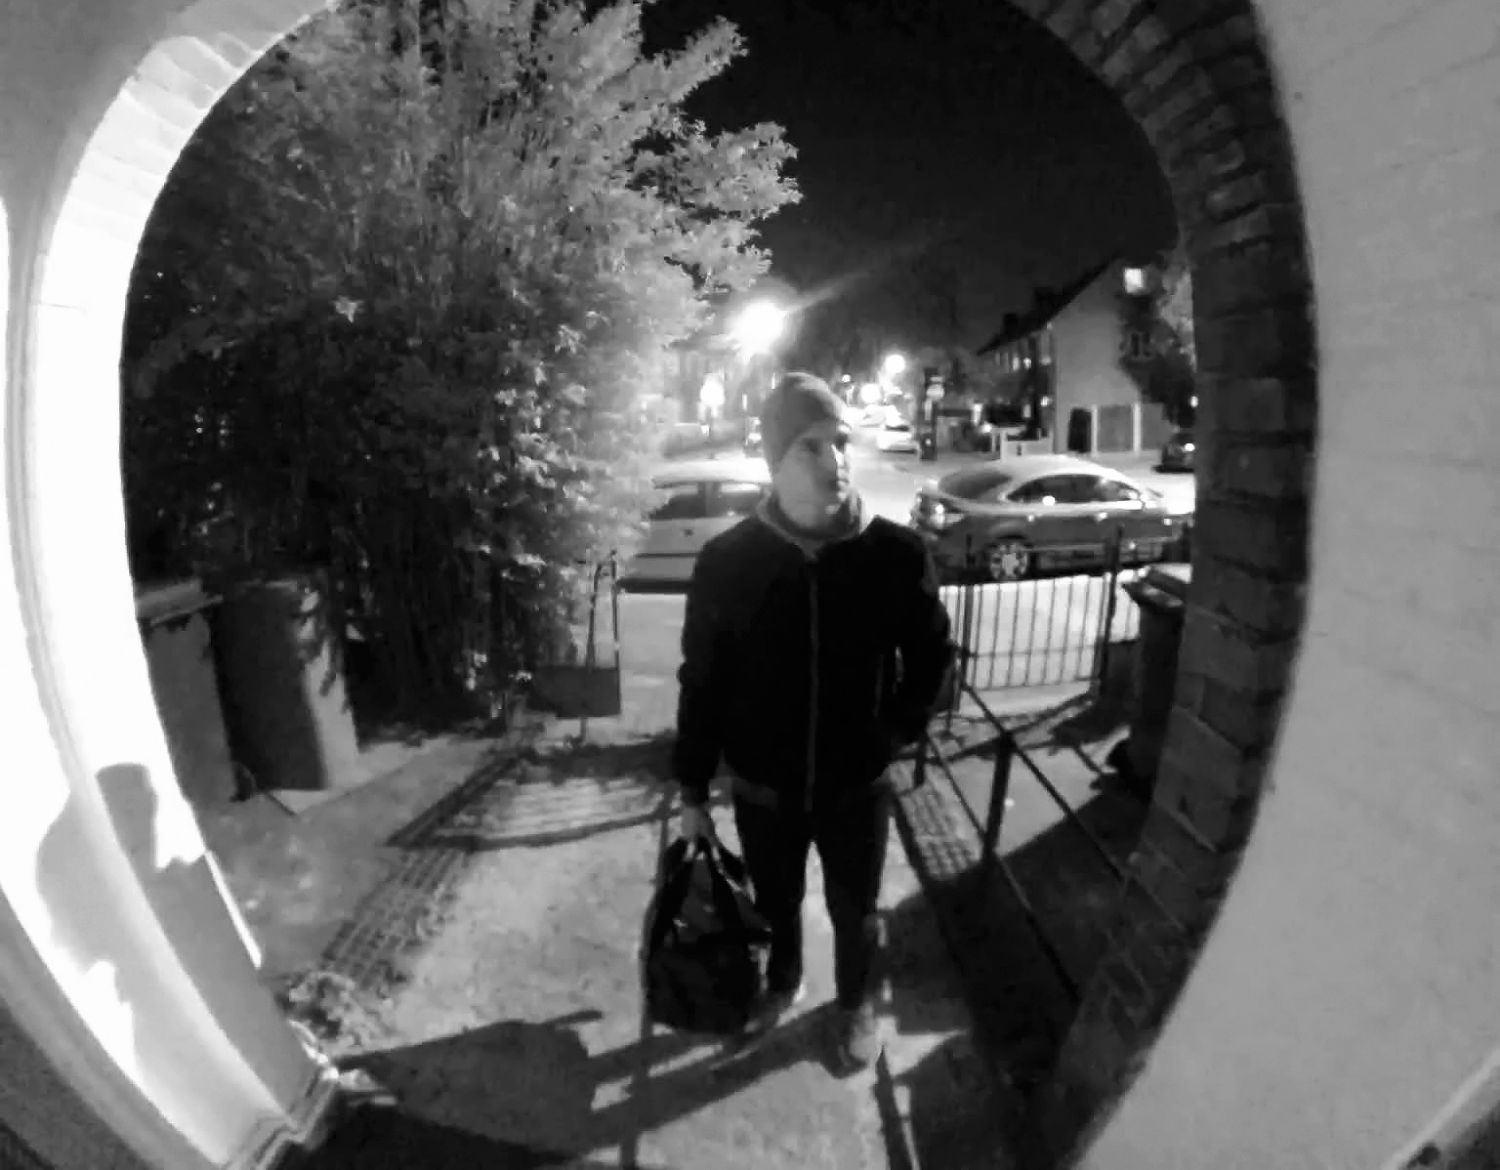 Ein Bild von einem Arlo-drahtfreien Video-Türklingel zeigt einen Mann in dunkler Kleidung an der Haustür